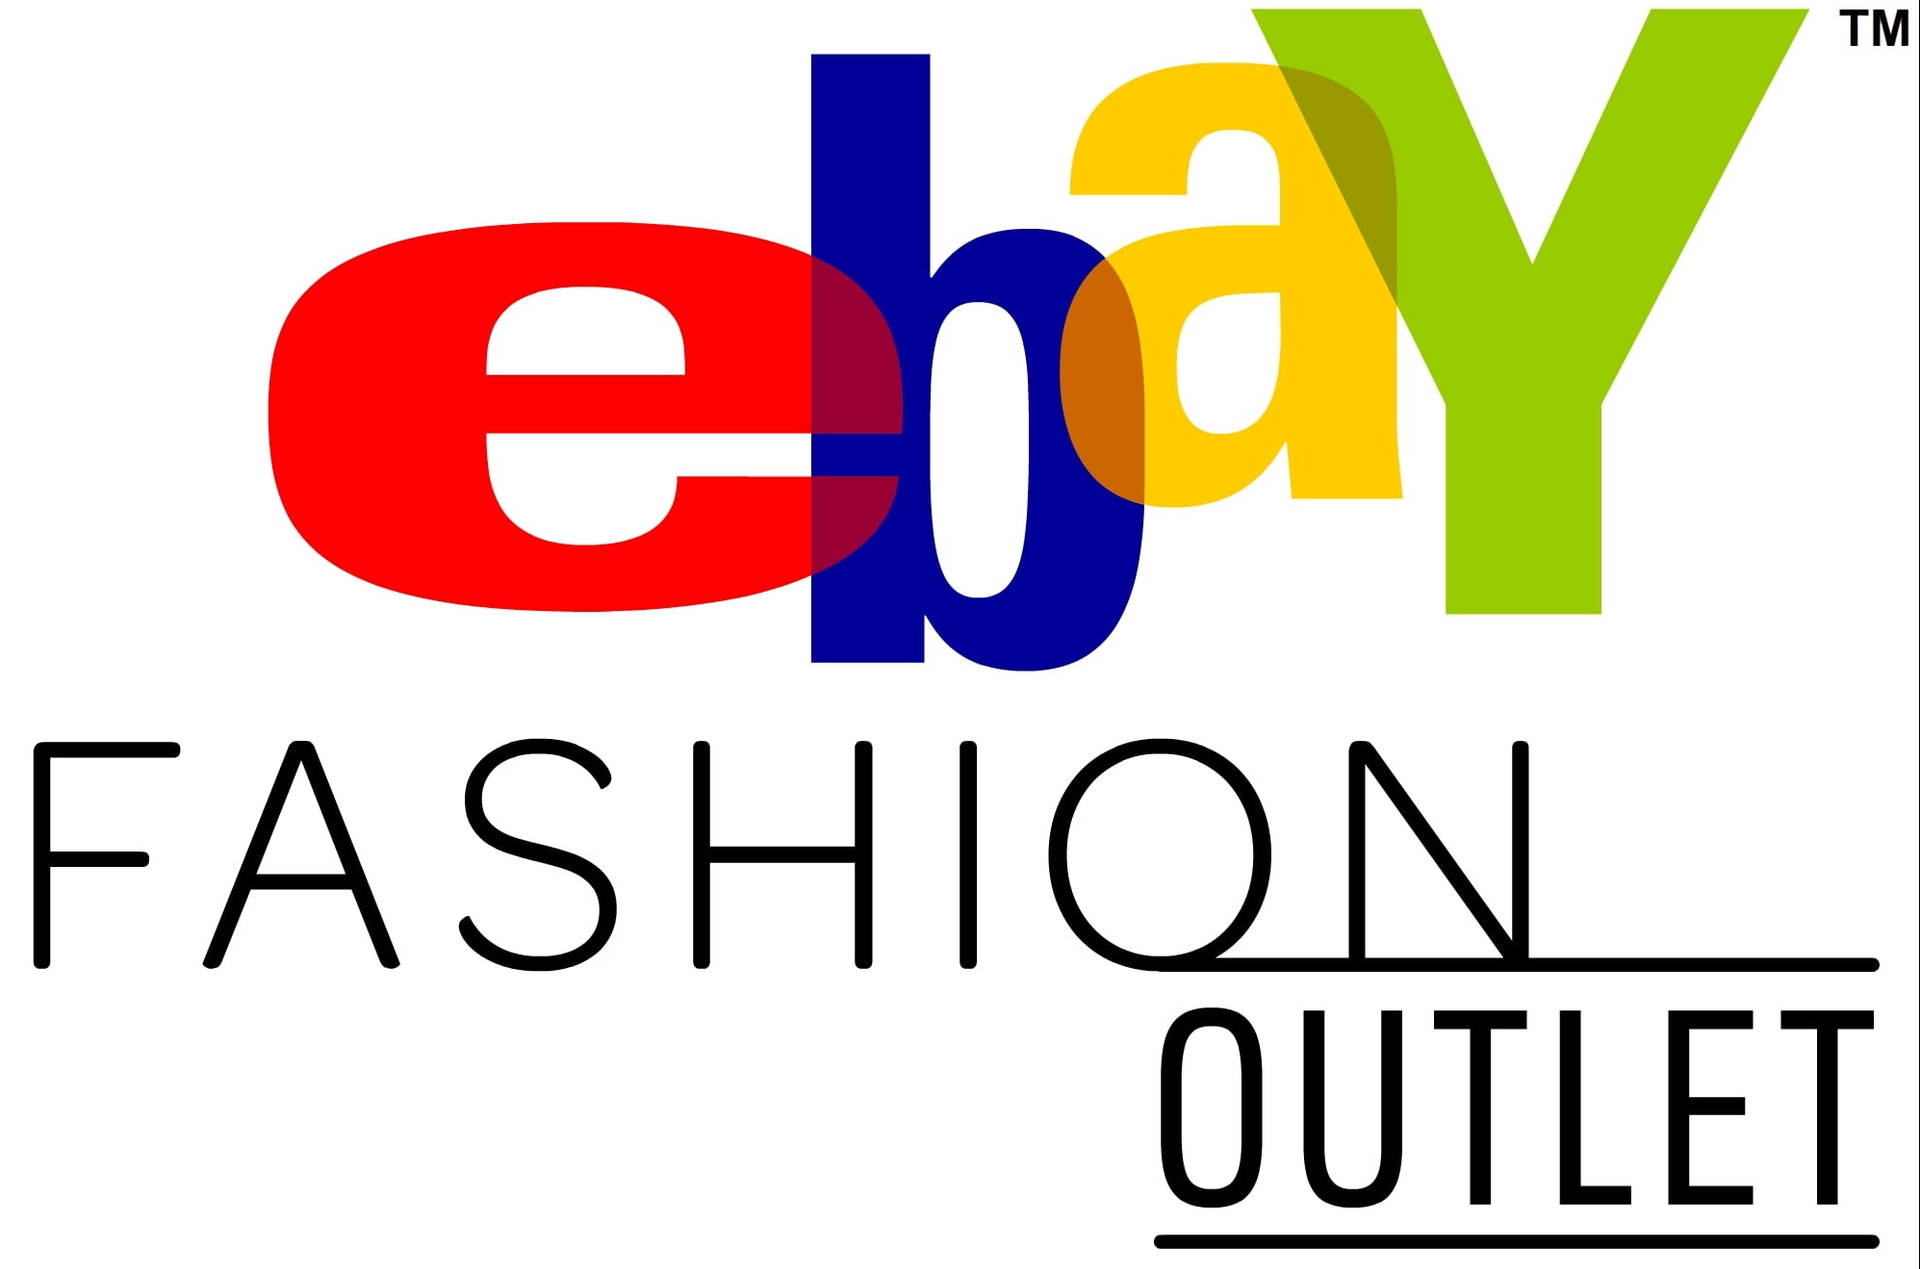 Ebay Fashion Outlet Wallpaper